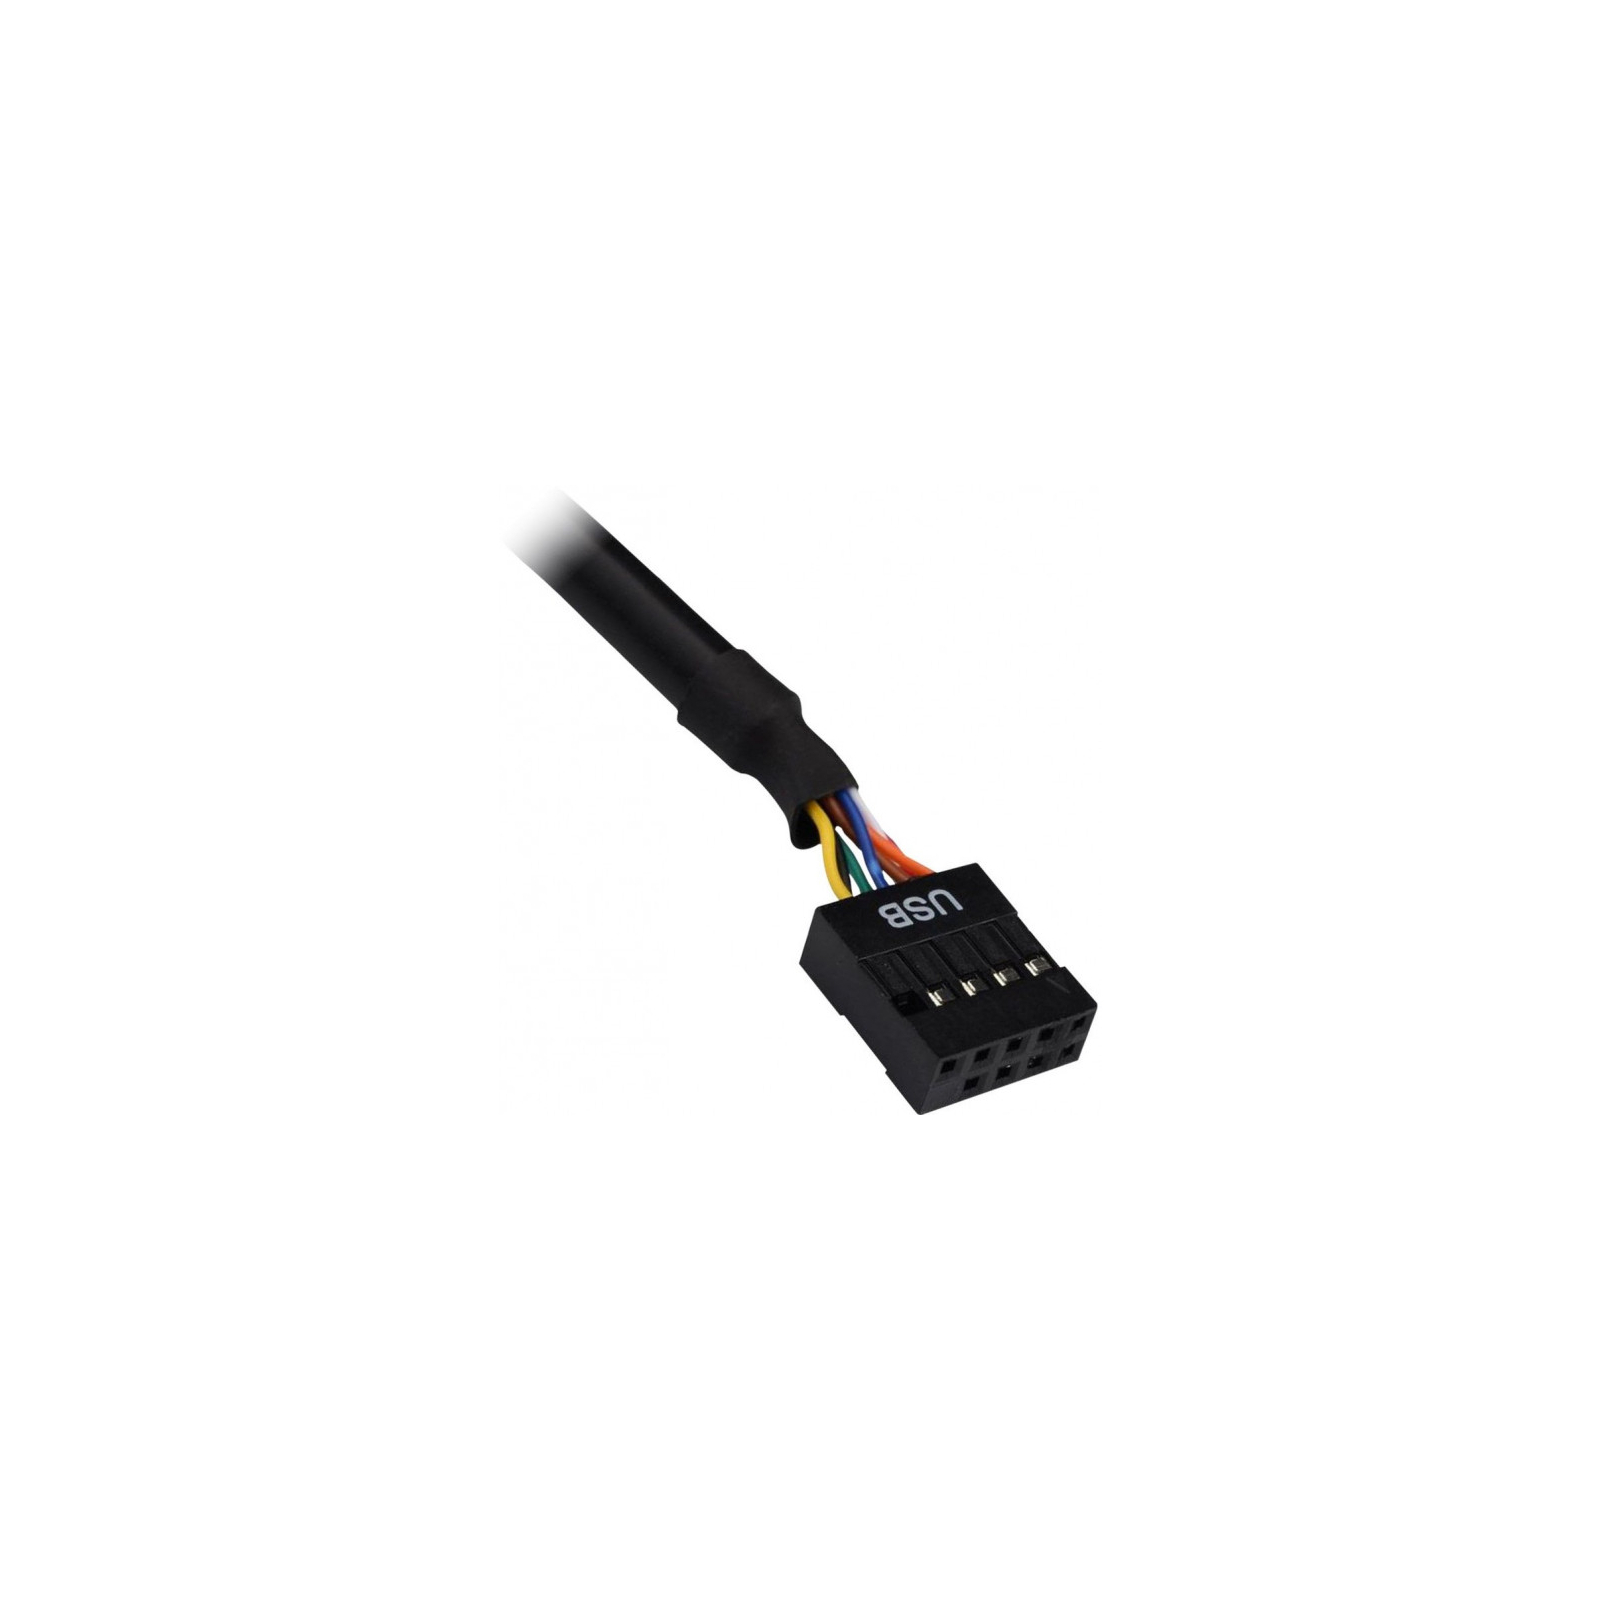 Зчитувач флеш-карт Nitrox USB2.0 3.5" SD/MMC/MS/CF/xD/Micro SD/M2 (CI-02) зображення 2